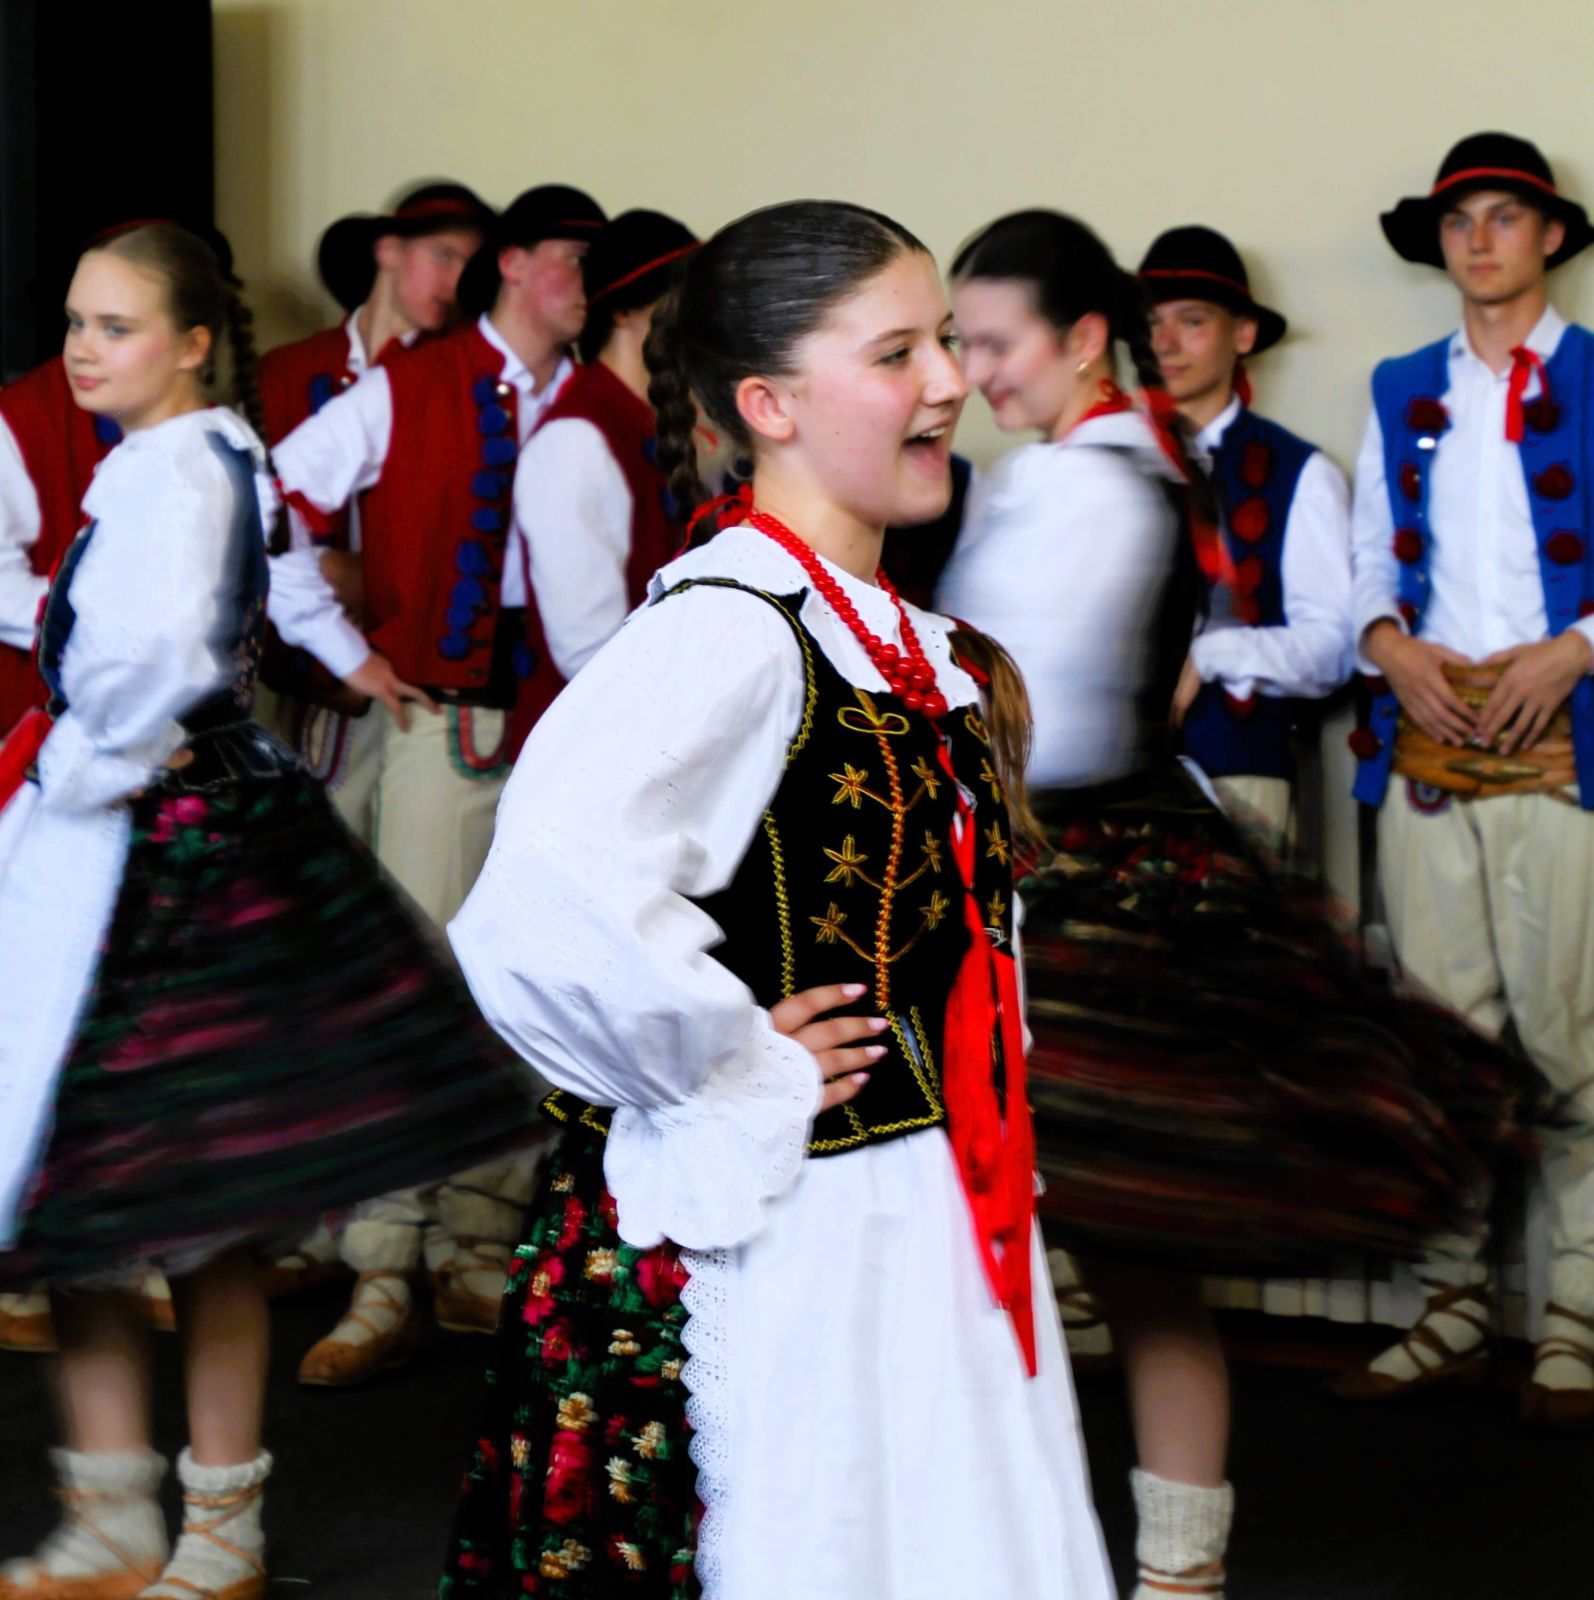 Dzięki tegorocznej współpracy z Zespołem Edukacyjno- Artystycznym „Przygoda”, udało się urozmaicić część artystyczną, w której uczniowie, a także ich rodzice mieli okazję zapoznać się z tańcem ludowym oraz polskim folklorem.